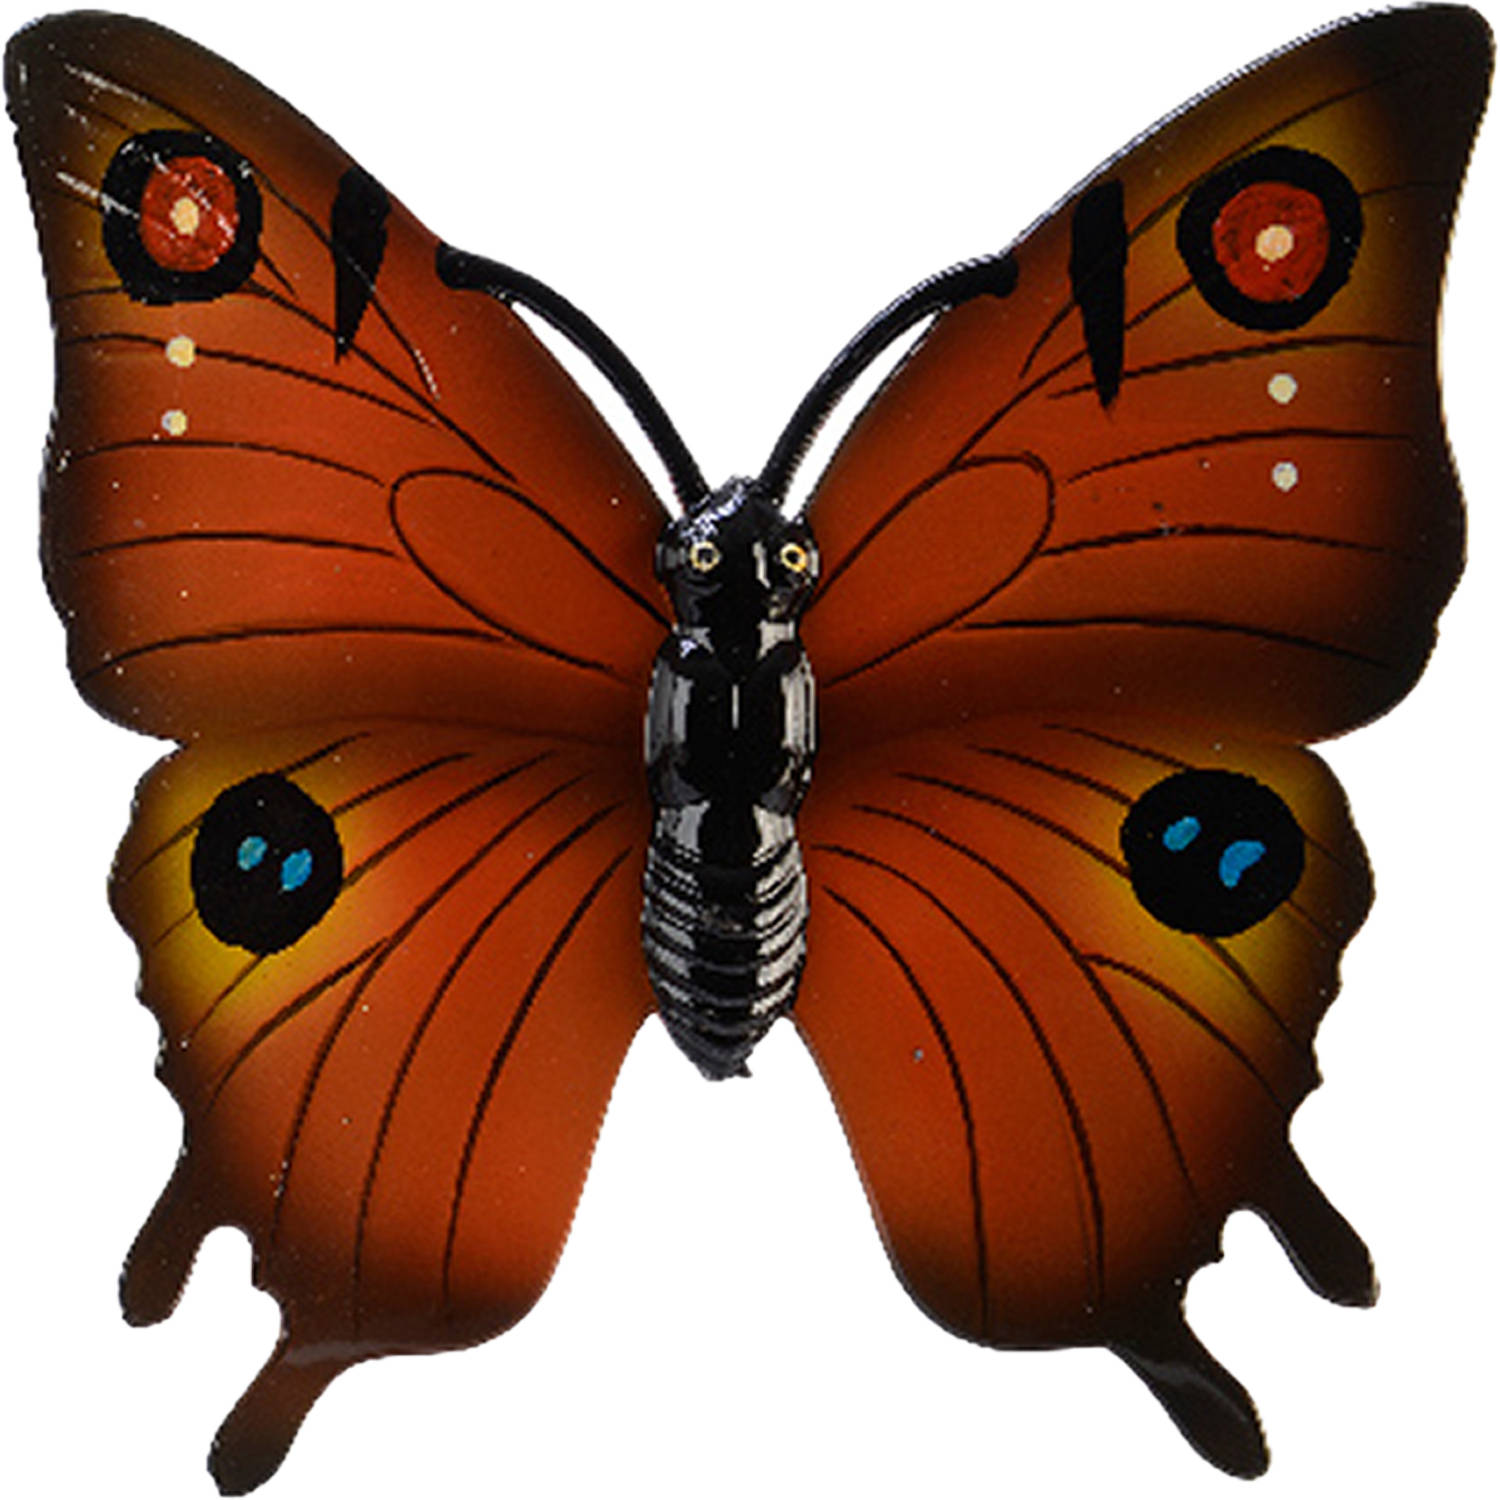 Tuin-schutting decoratie vlinder kunststof oranje 24 x 24 cm Tuinbeelden